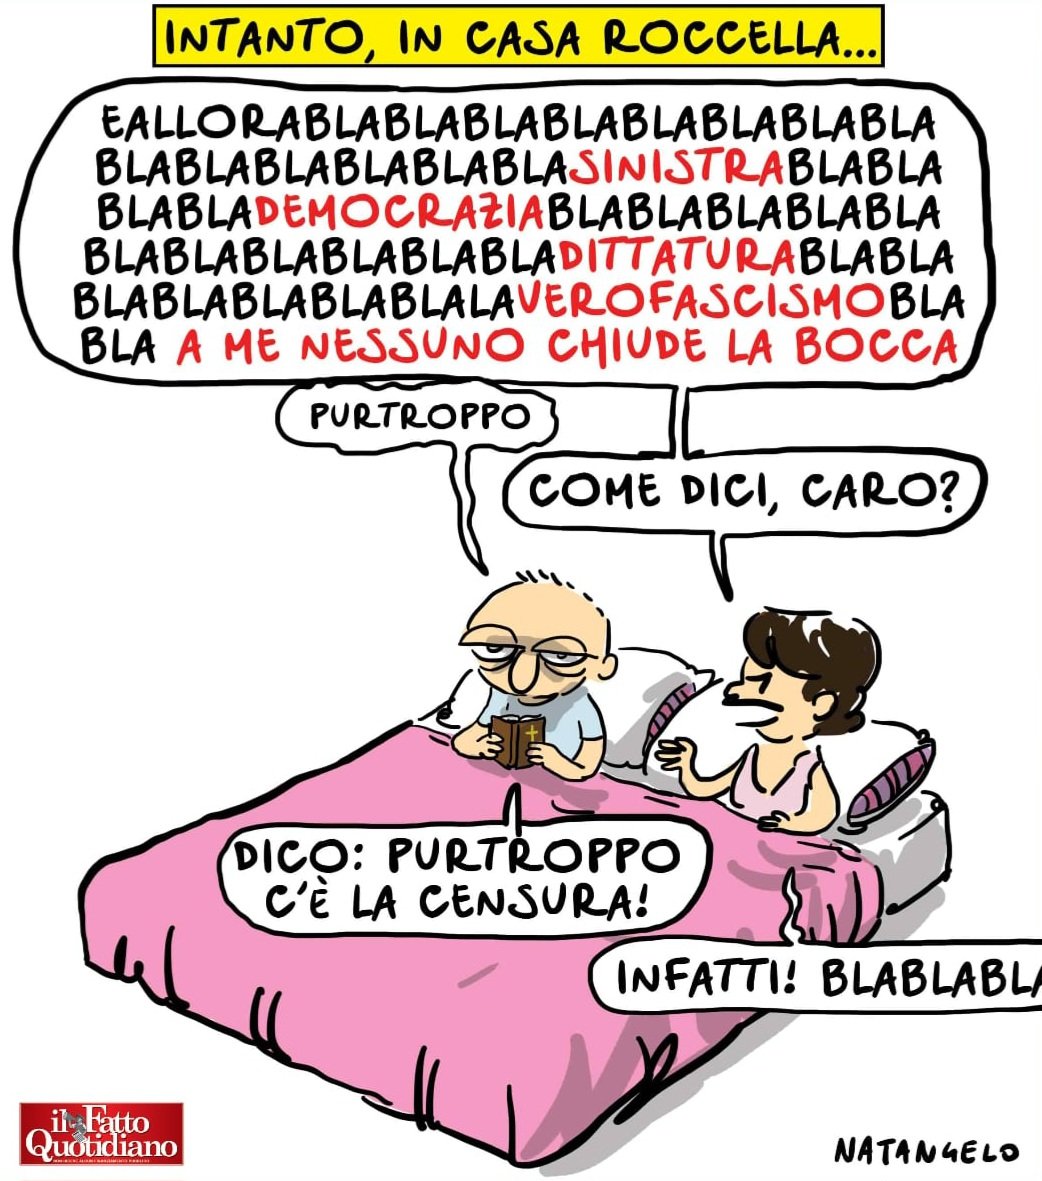 Diritto di parola - la mia vignetta per Il Fatto Quotidiano oggi in edicola!  #roccella #vignetta #fumetto #memeitaliani #umorismo #satira #humor #natangelo